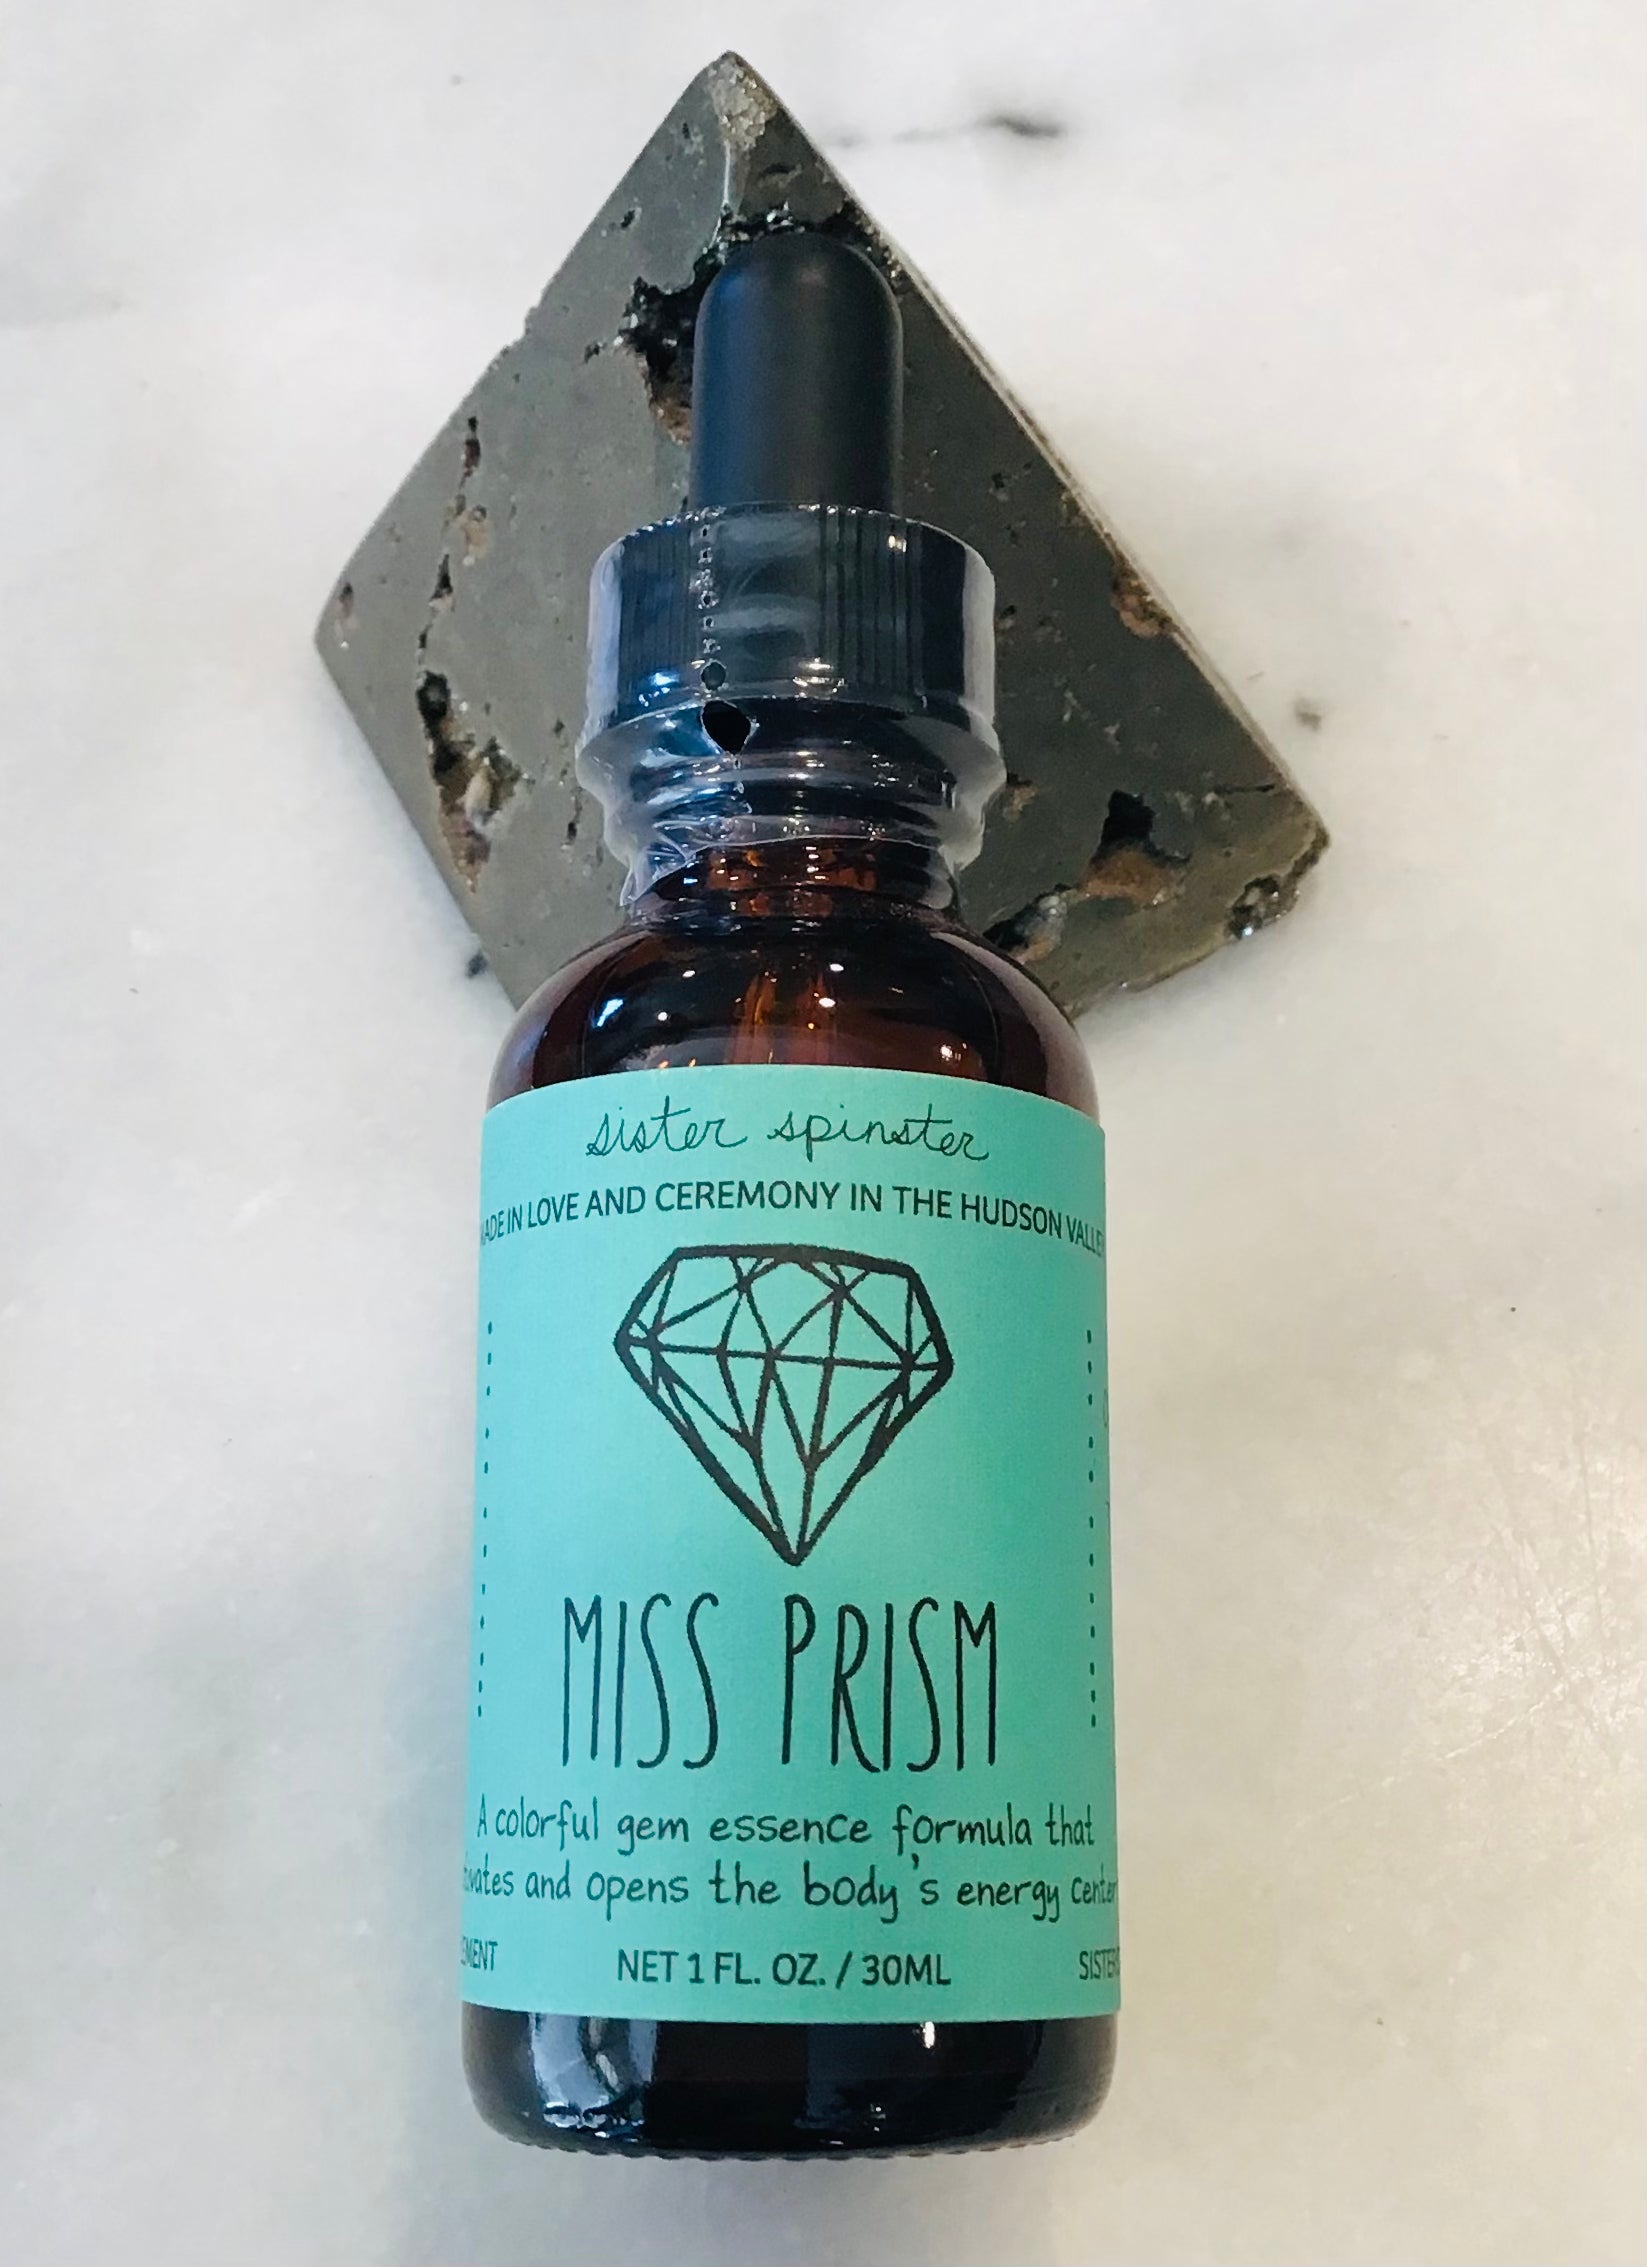 Sister Spinster “Miss Prism” Flower and Gem Essence